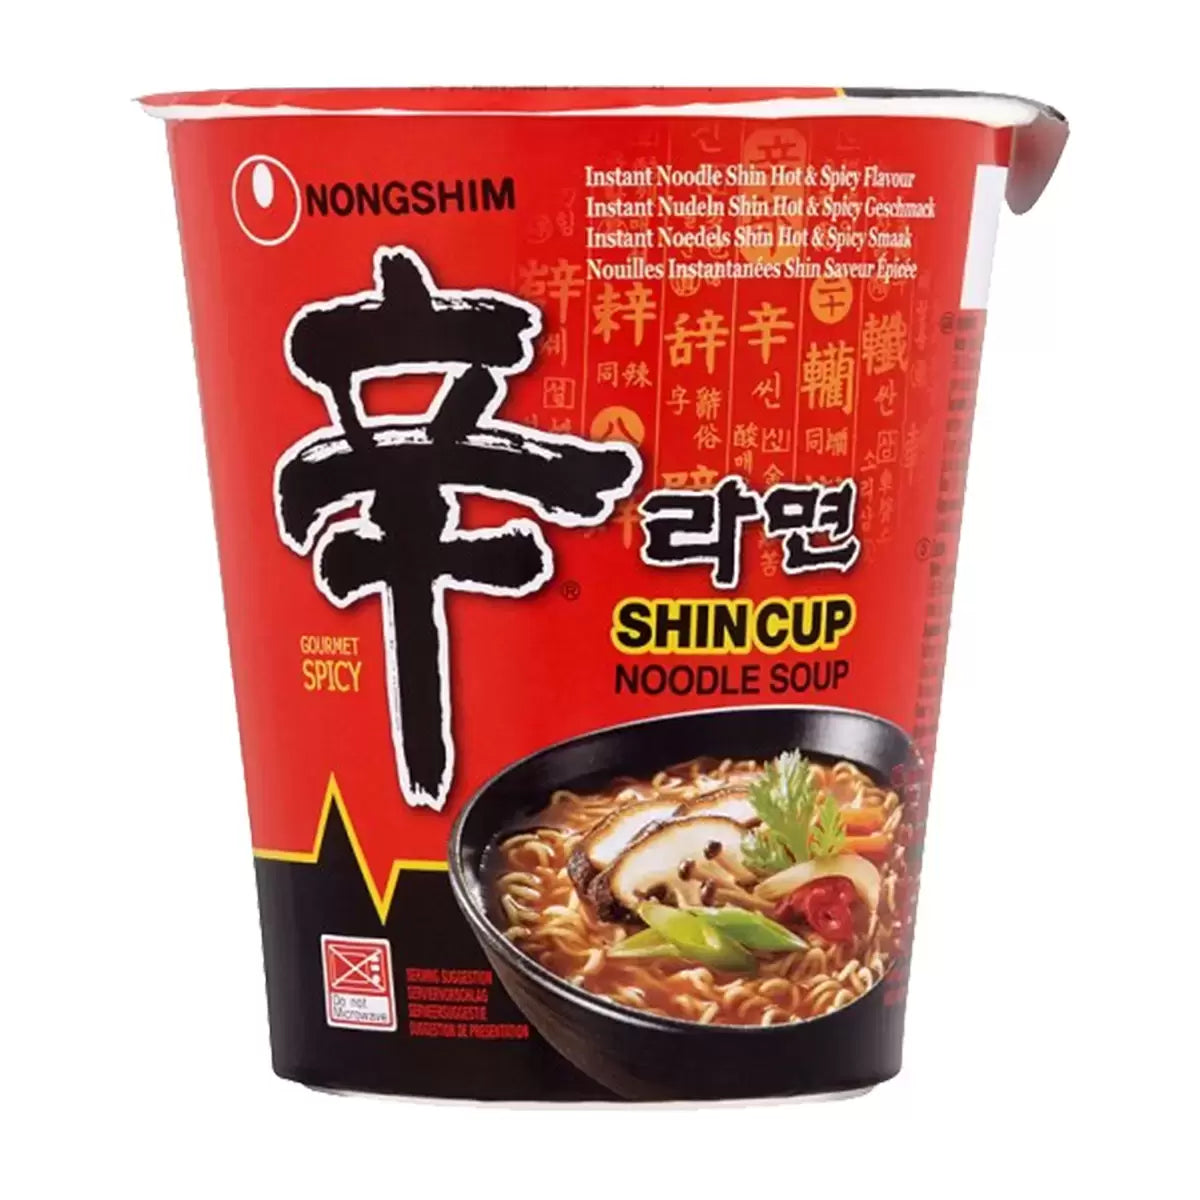 Nongshim Shin Cup Noodle Soup - 68g